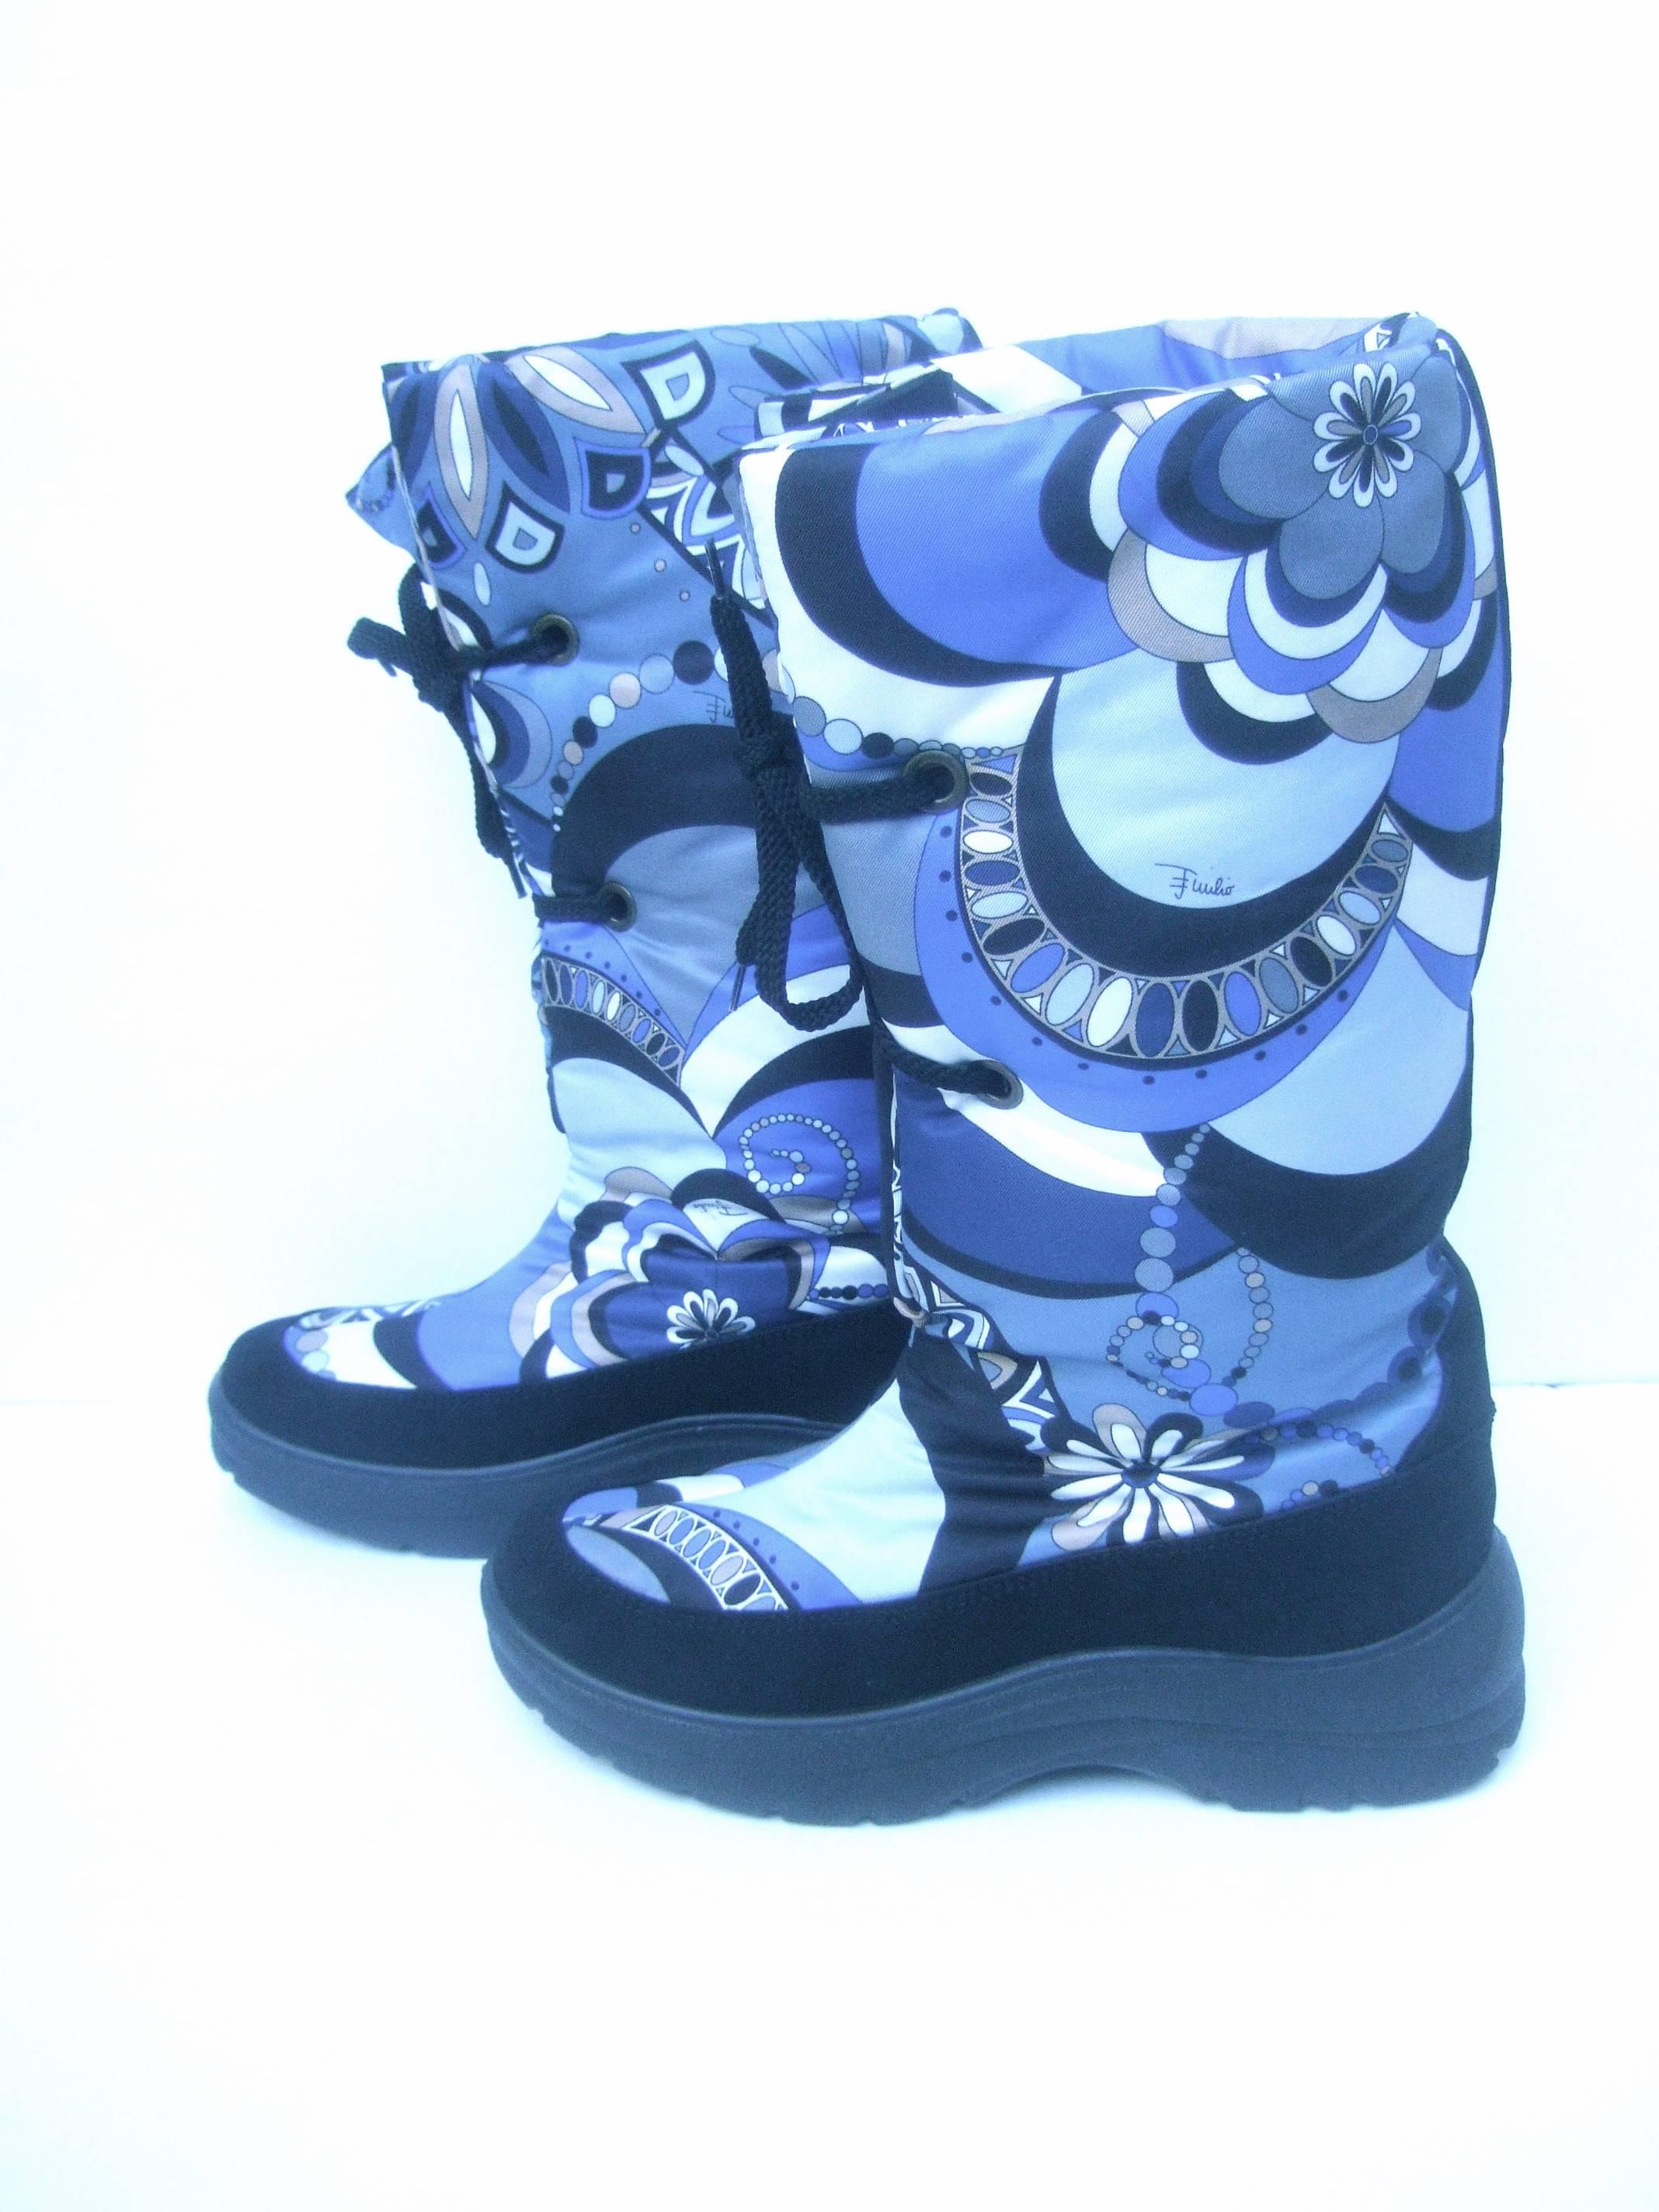 Emilio Pucci Bold Nylon Print Ski Boots Size 40  4